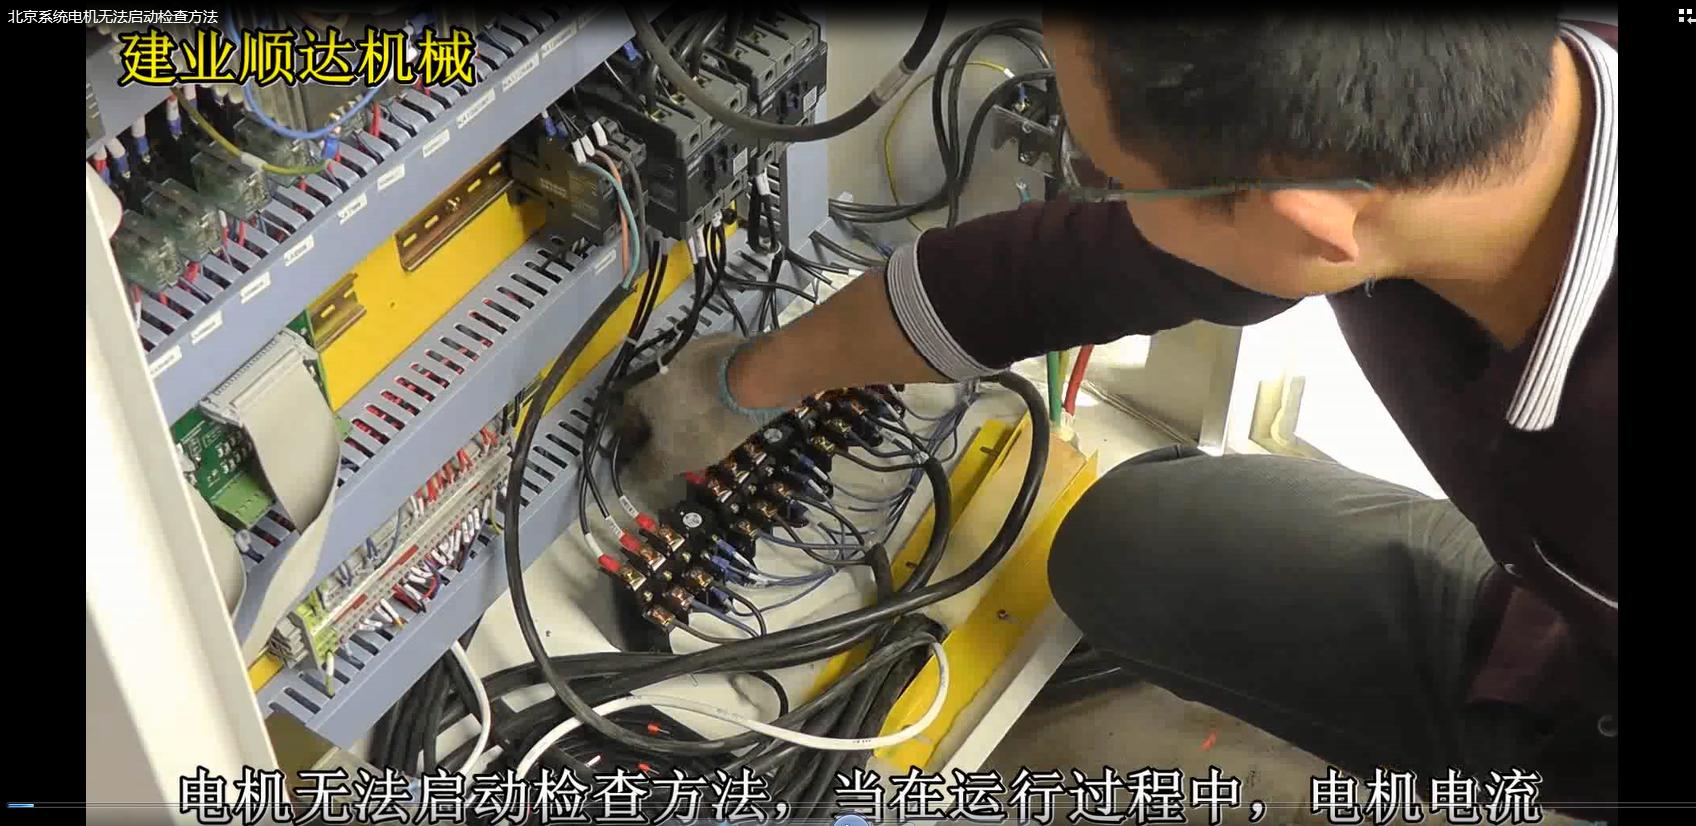 Beijing system motor fails to start inspection method